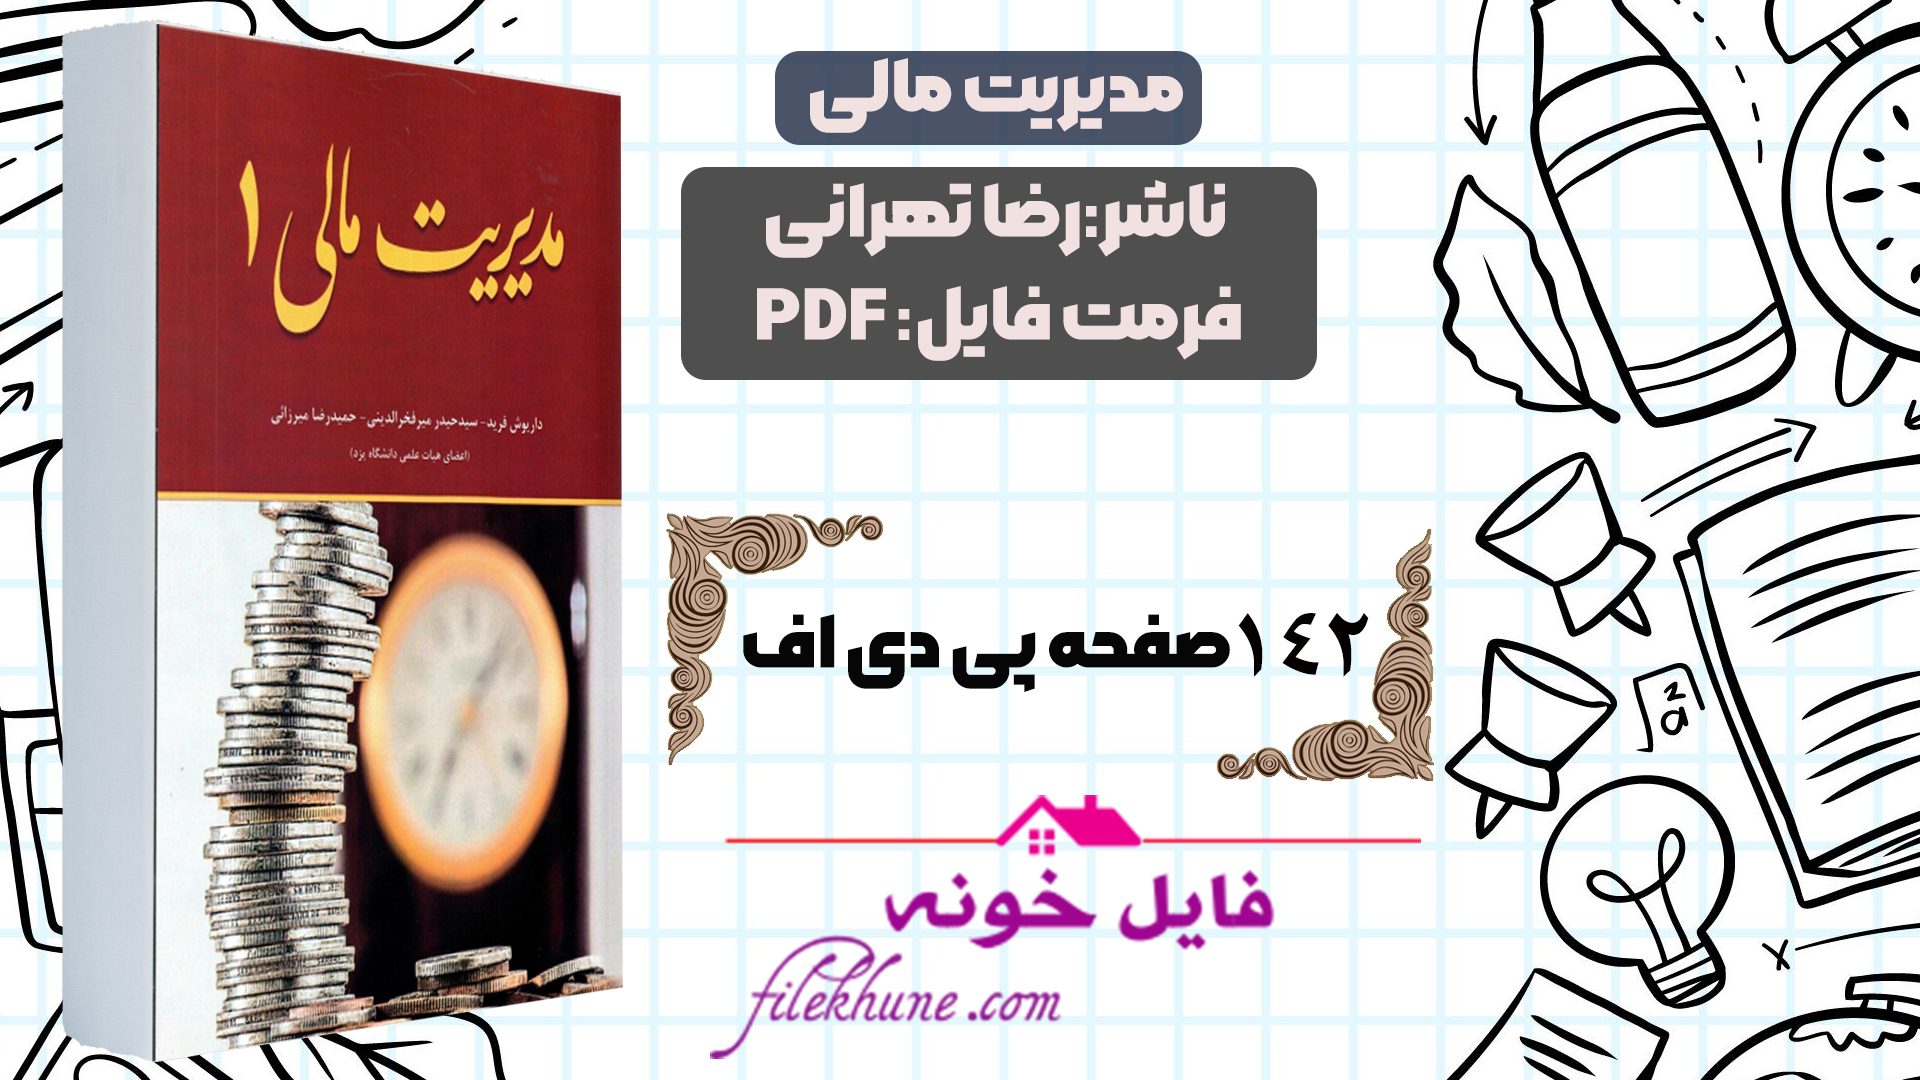 دانلود کتاب مدیریت مالی رضا تهرانی PDF - فایل خونه